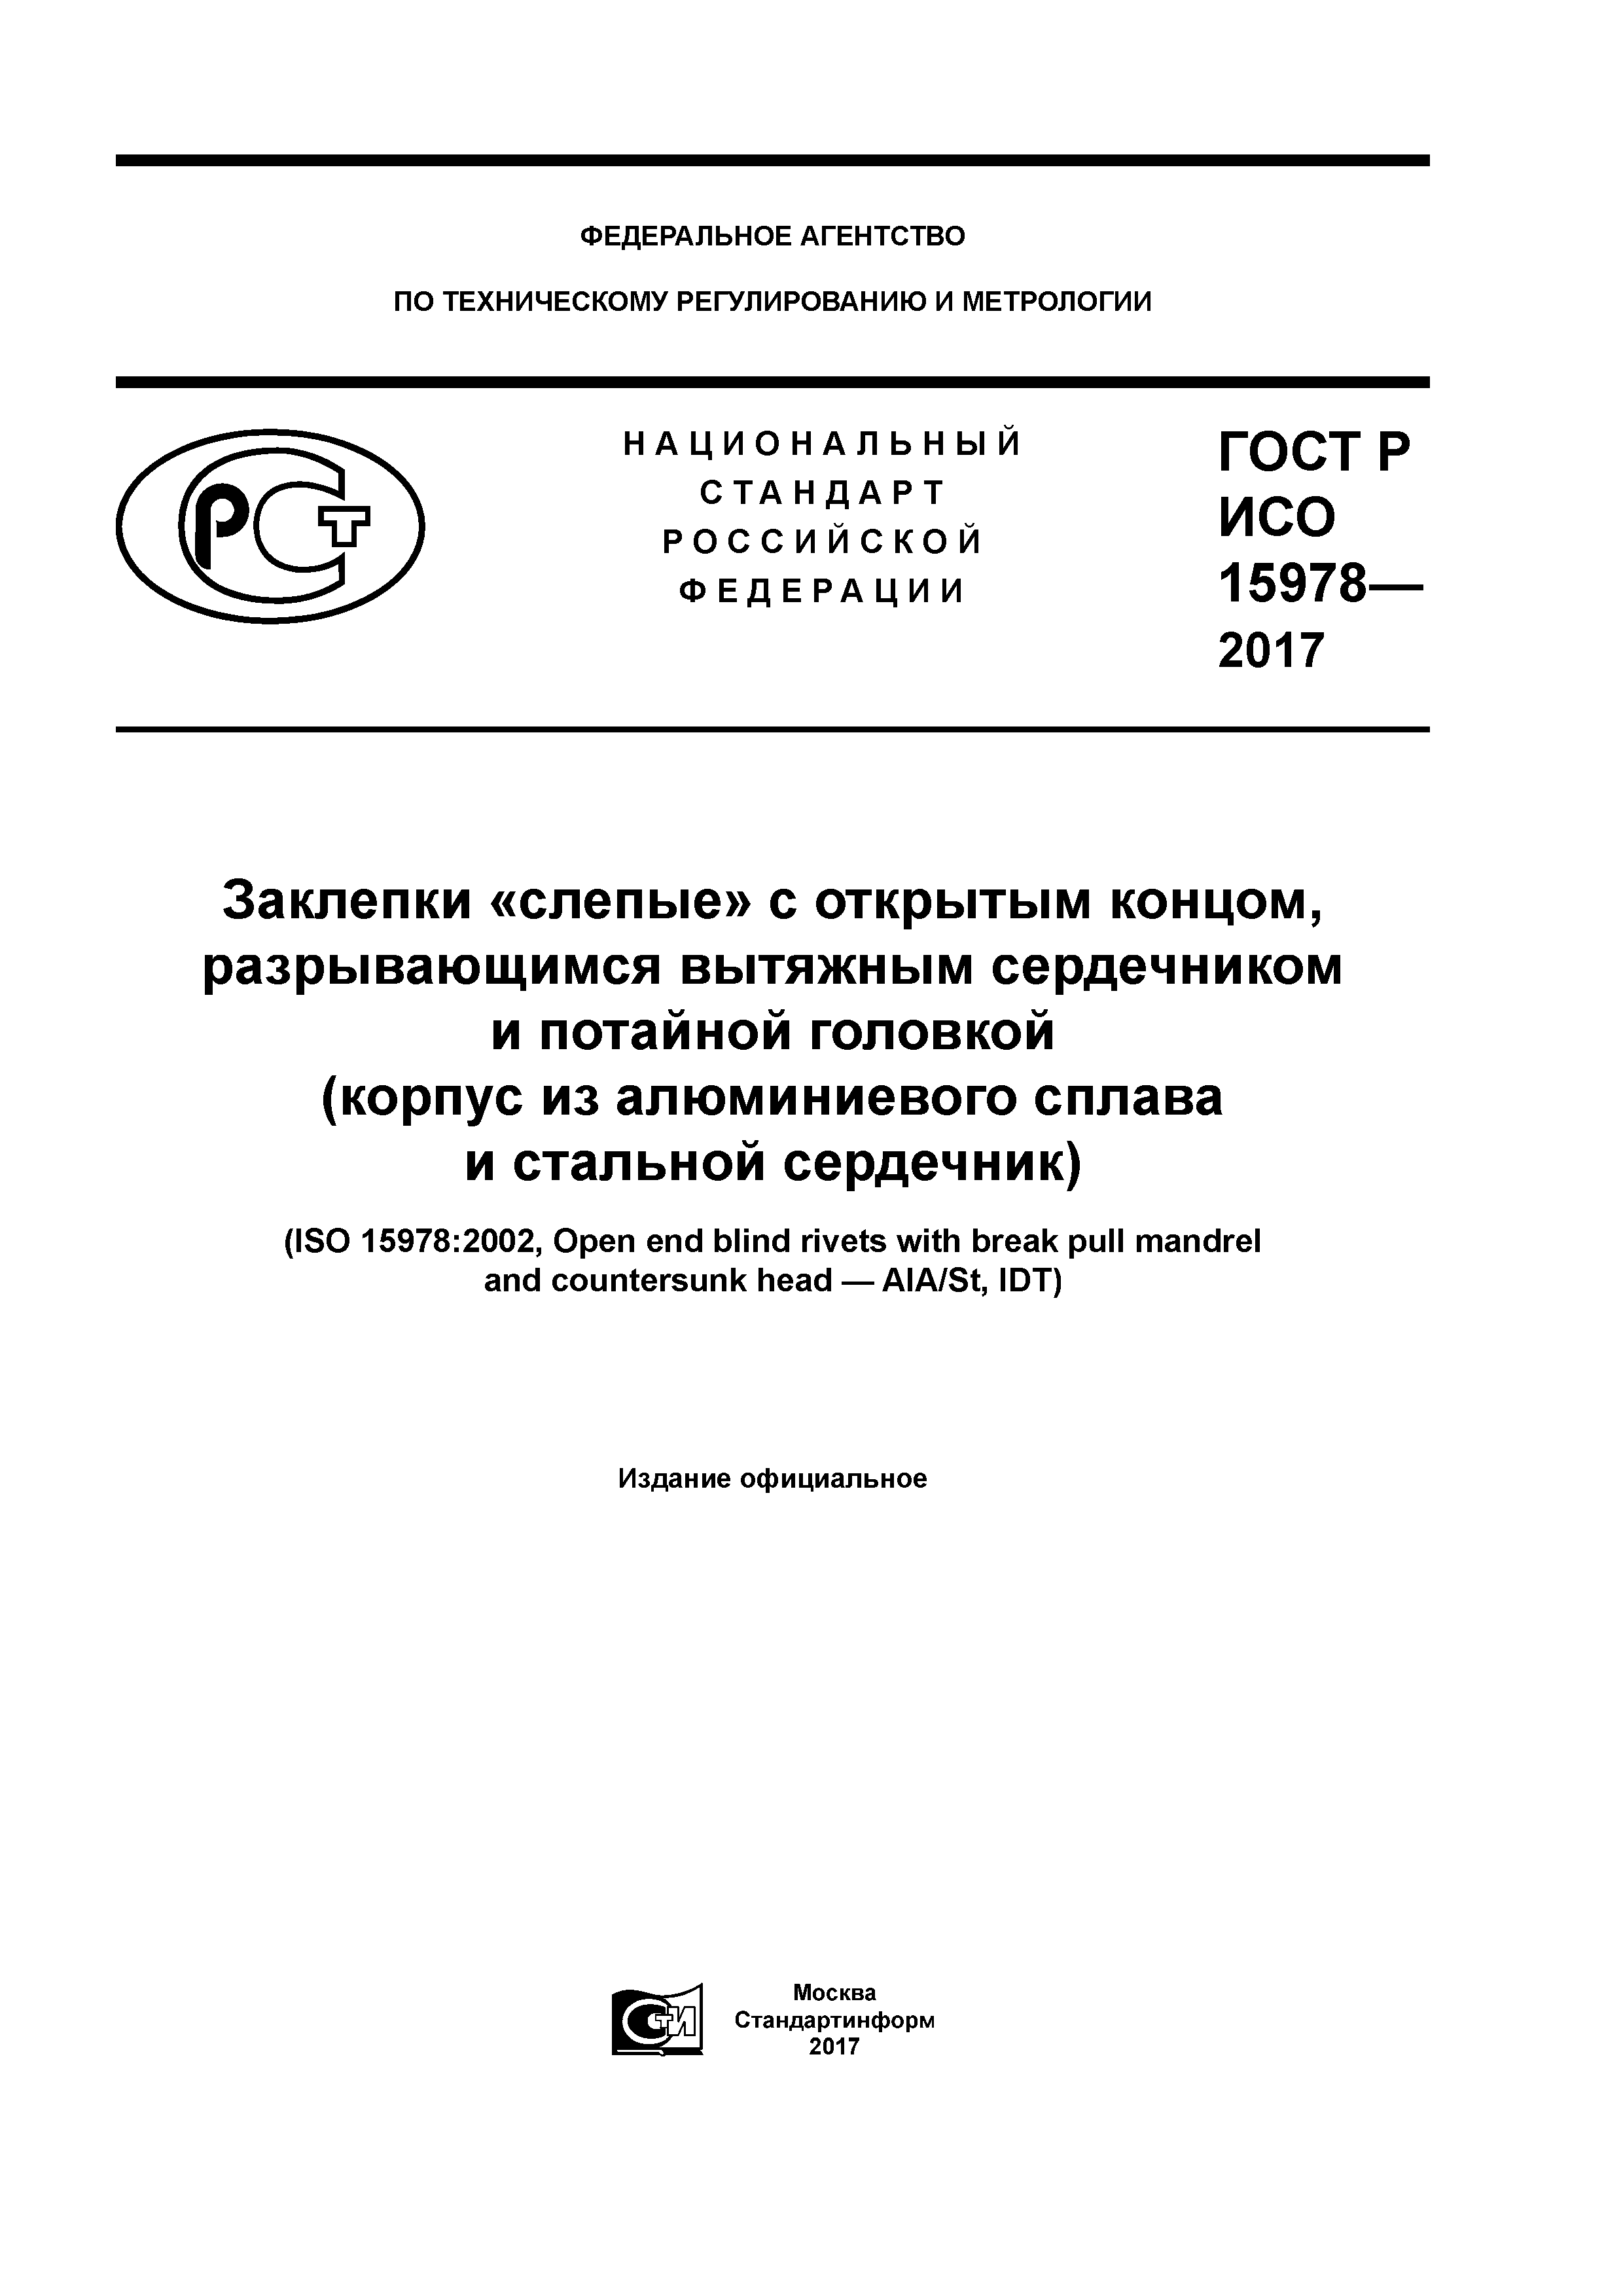 ГОСТ Р ИСО 15978-2017